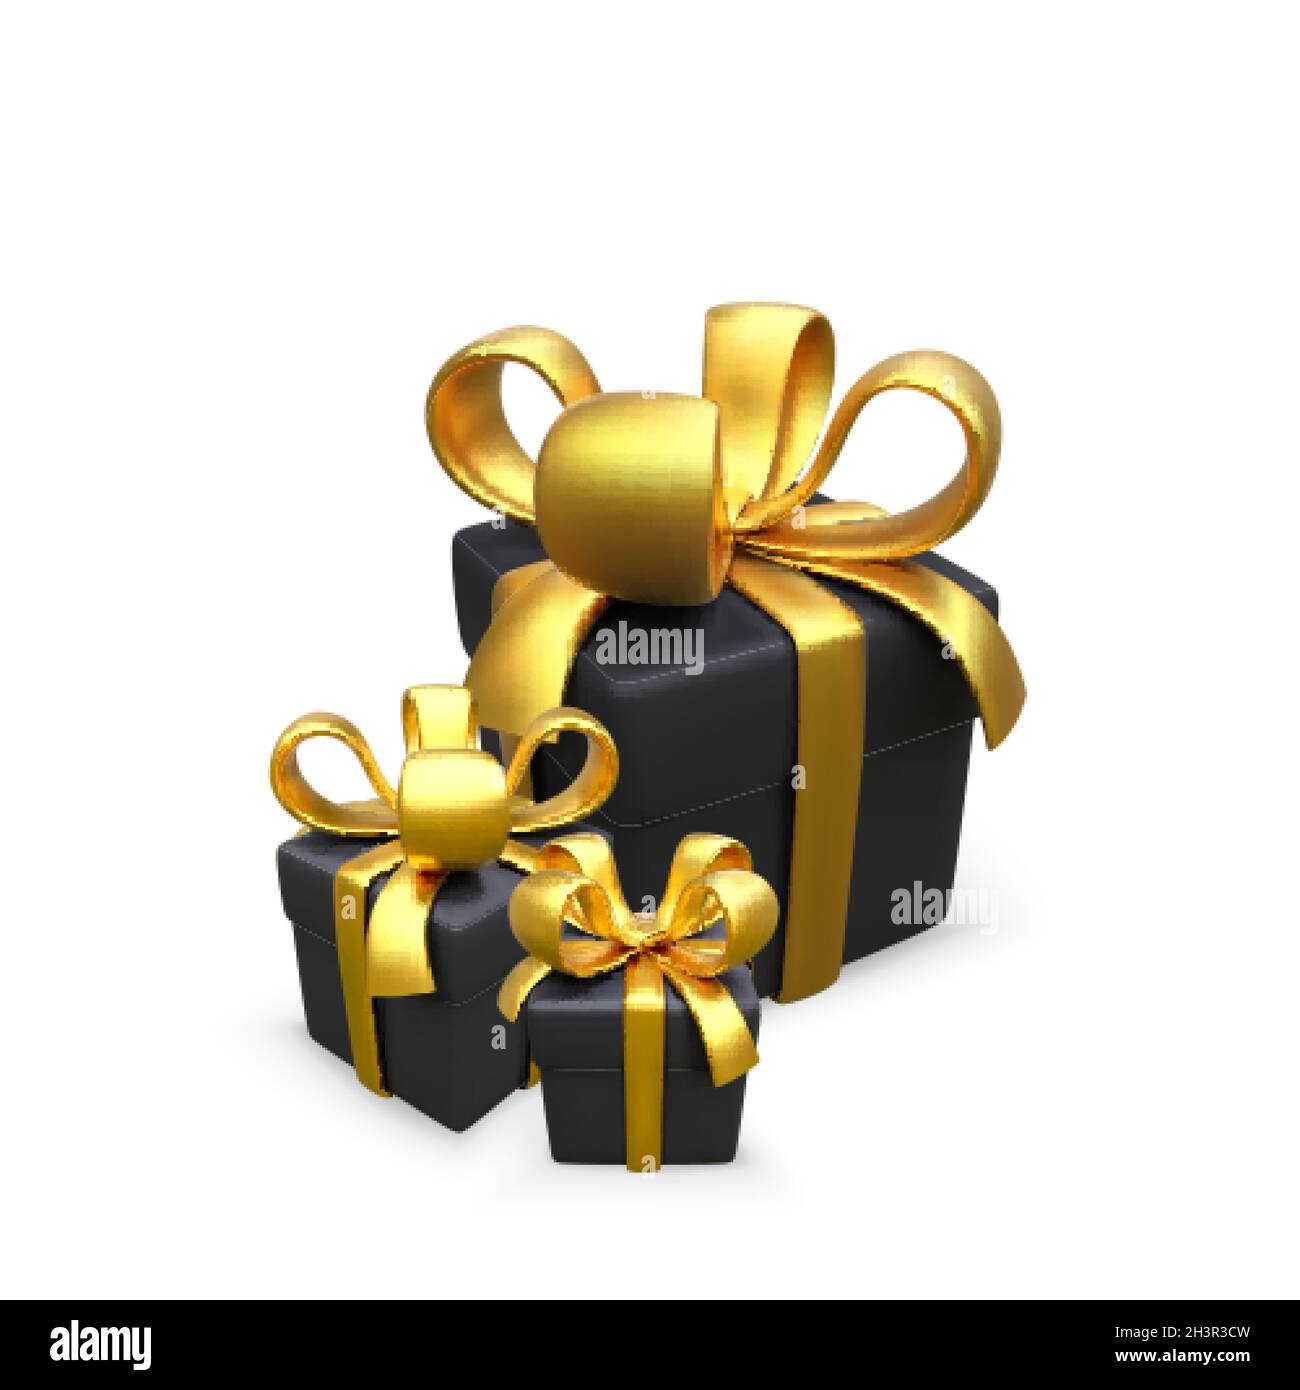 Schwarze Geschenkbox mit Goldband in realistischem Stil. Überraschungspaket für den Urlaub. 3D-Box mit goldener Schleife. Black friday Design-Element. Vektorgrafik Stock Vektor